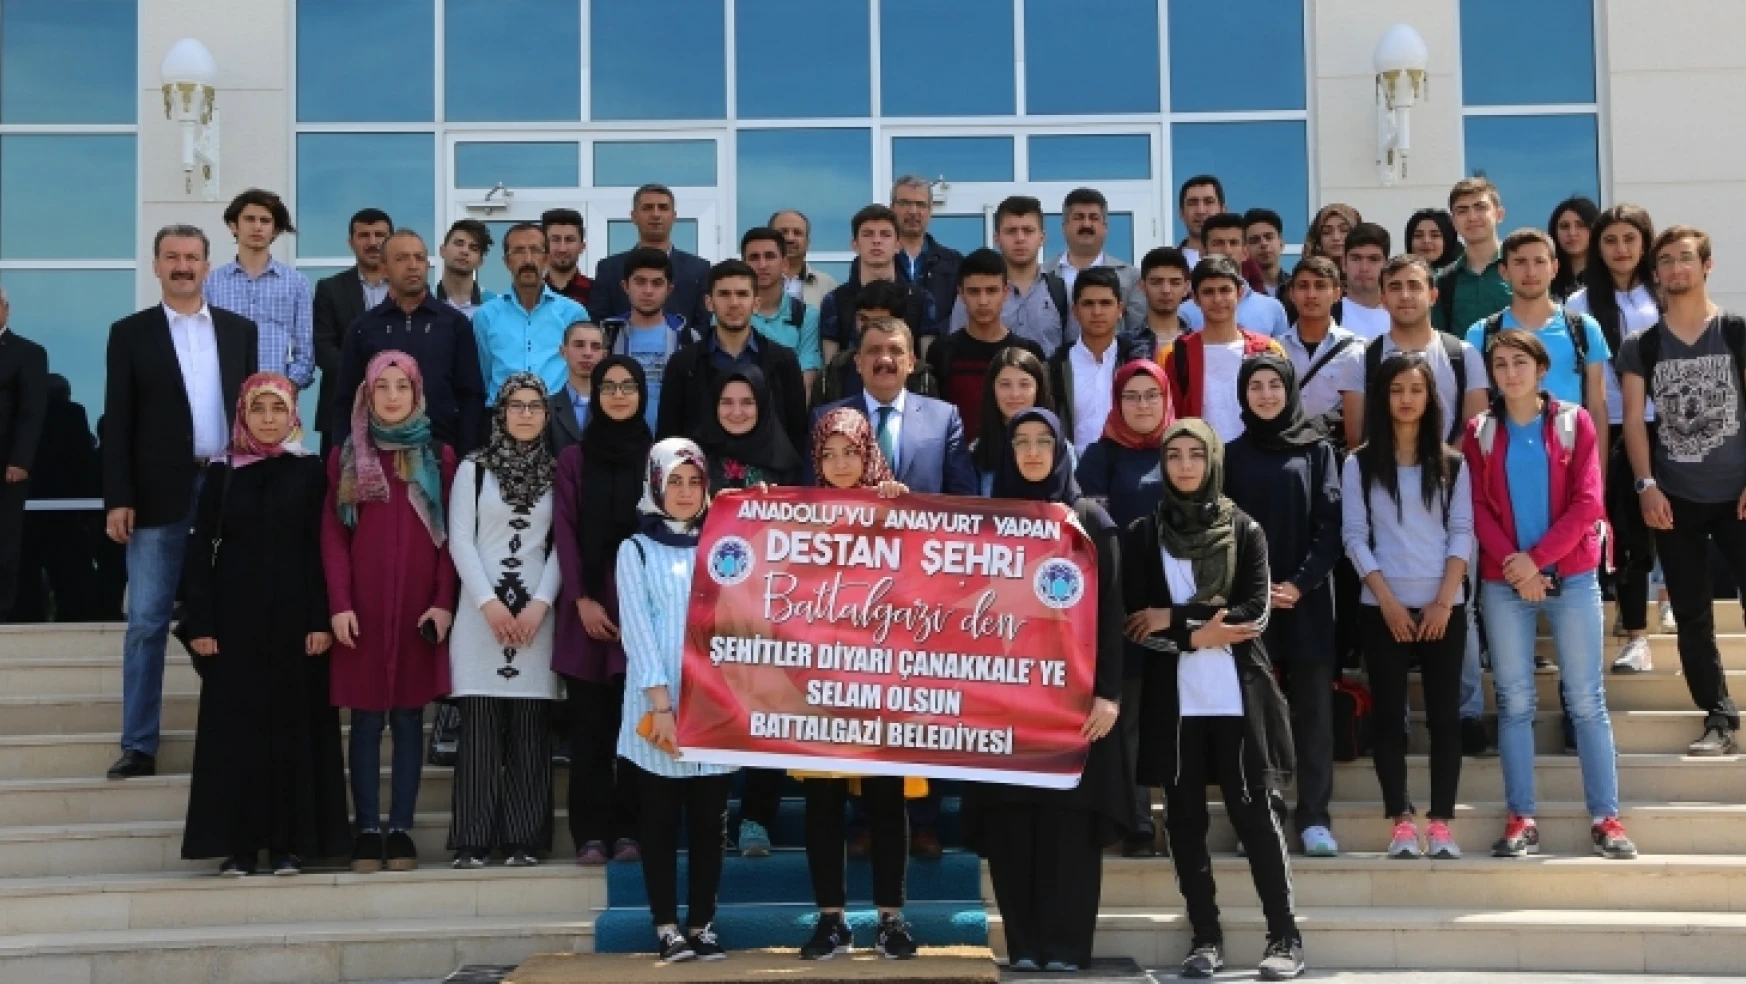 Battalgazi Belediyesi Başarılı Öğrencileri Çanakkale'ye Gönderdi